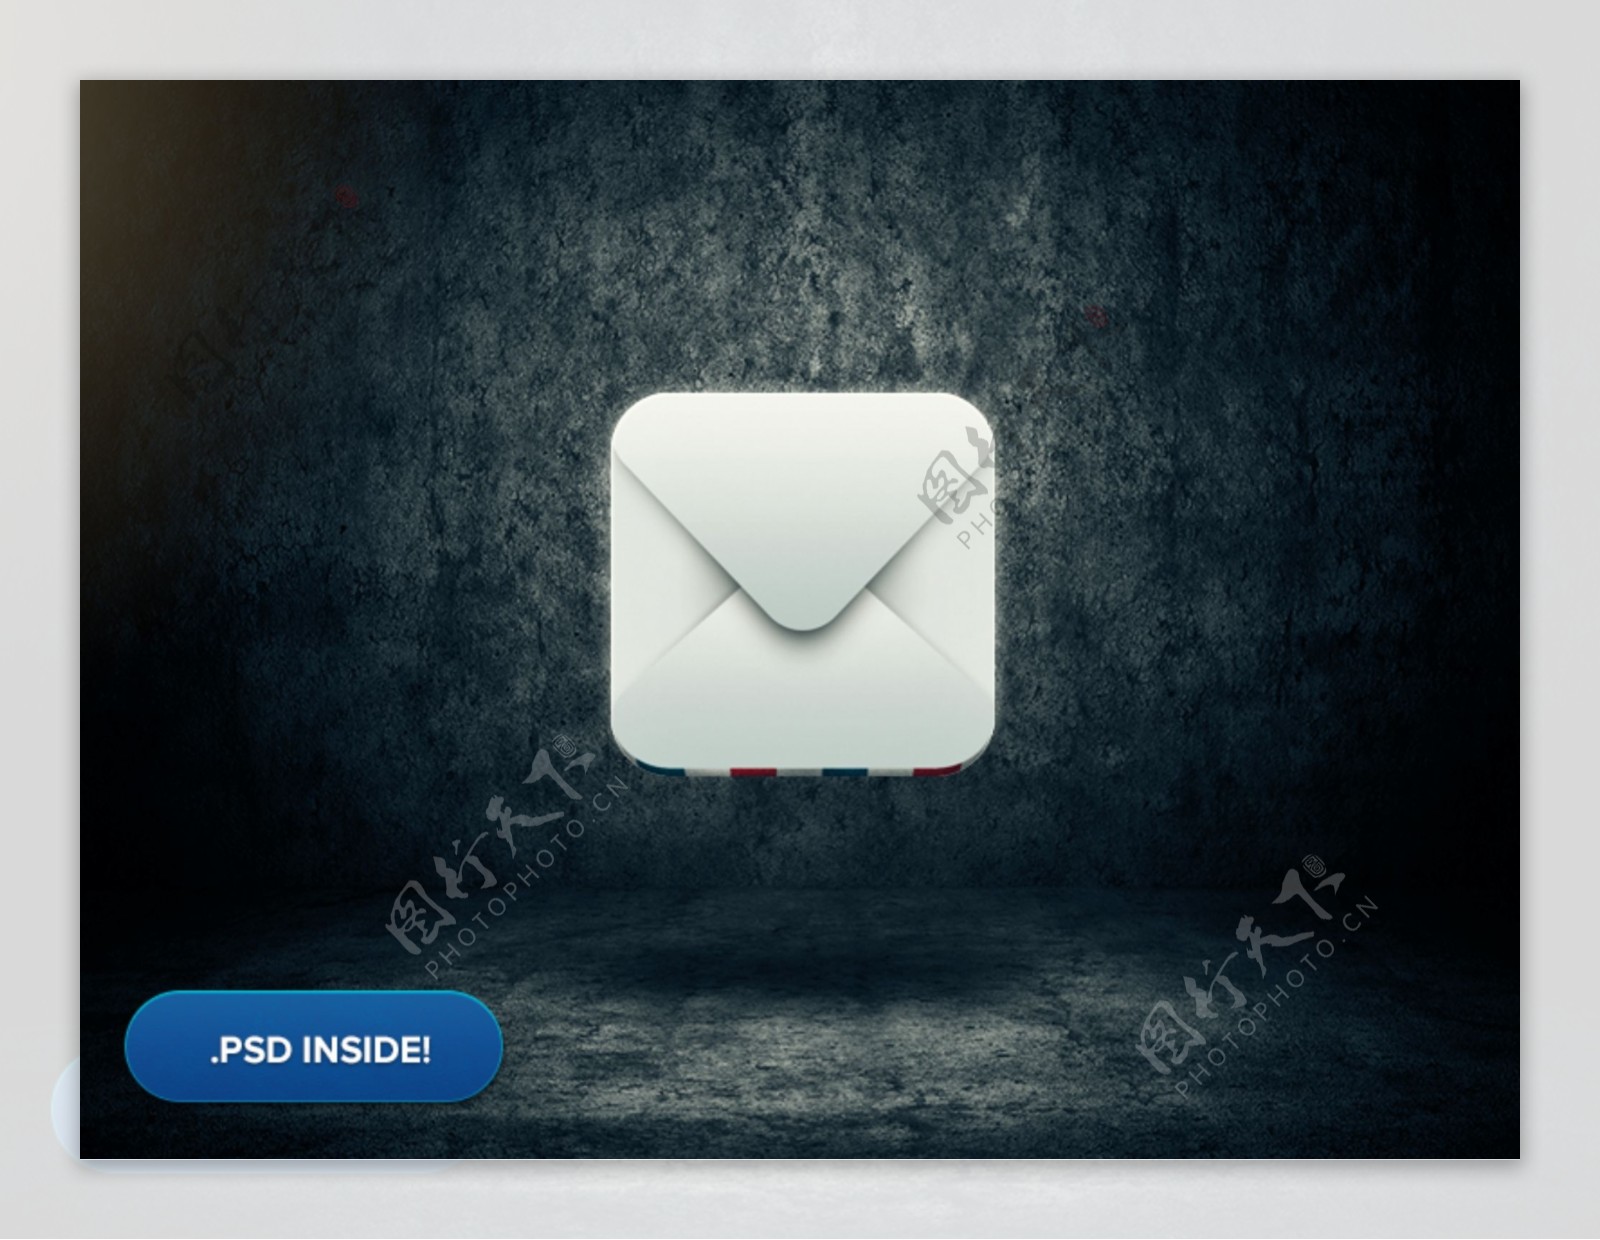 邮件icon